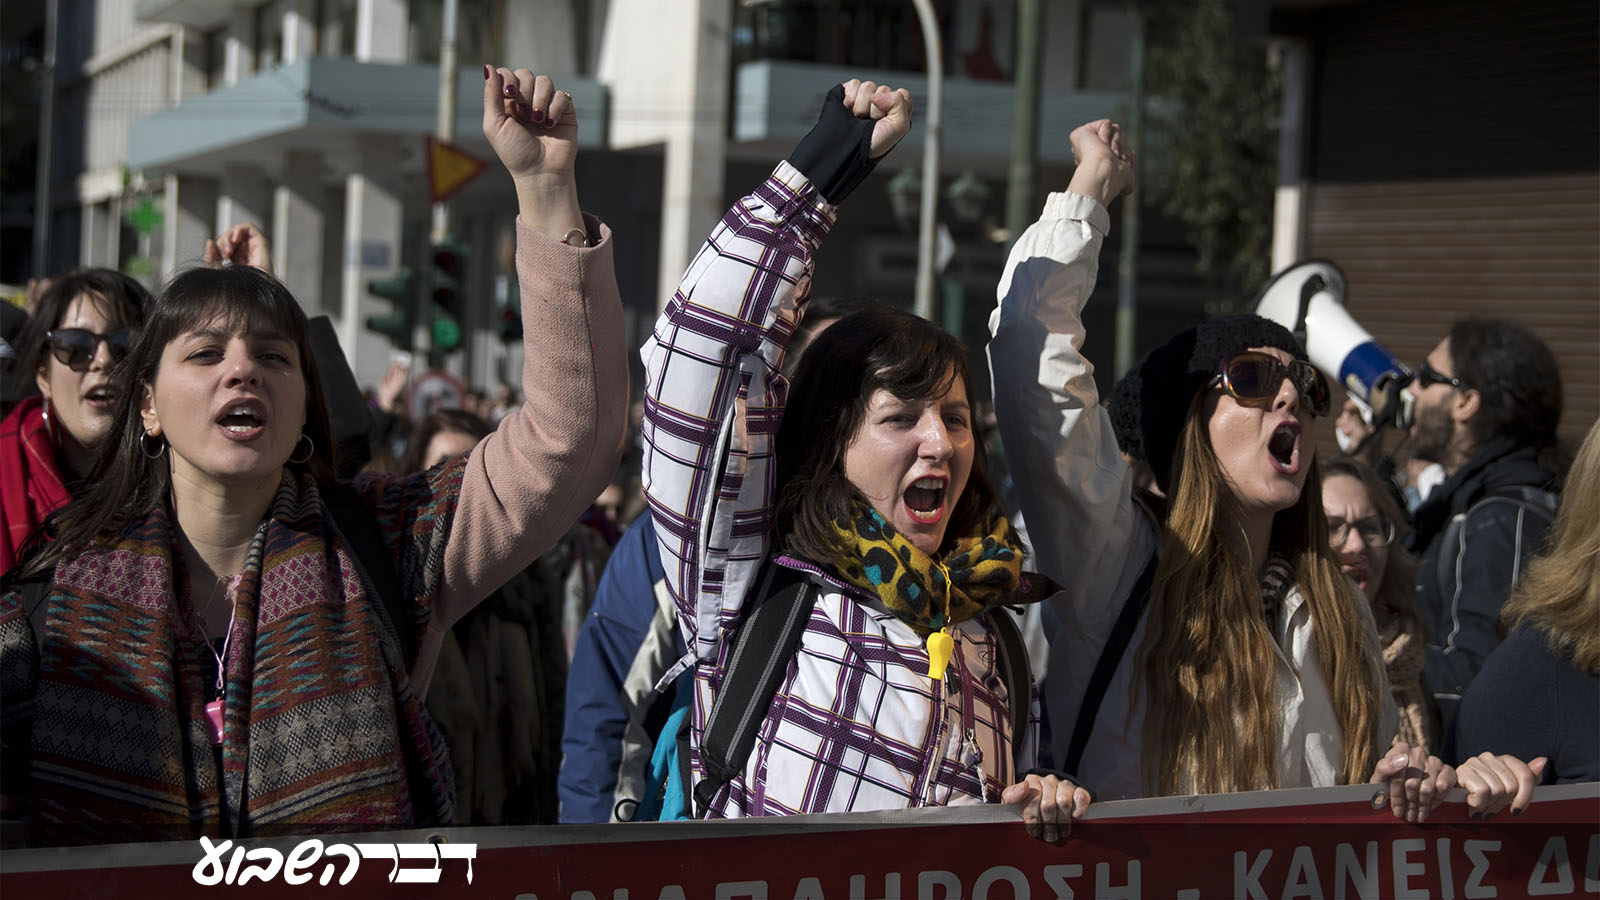 הפגנת מורים במרכז אתונה, בירת יוון במחאה על מדיניות הקבלה לעבודה בבתי ספר ציבוריים. 17 בינואר 2019 (AP Photo/Petros Giannakouris)